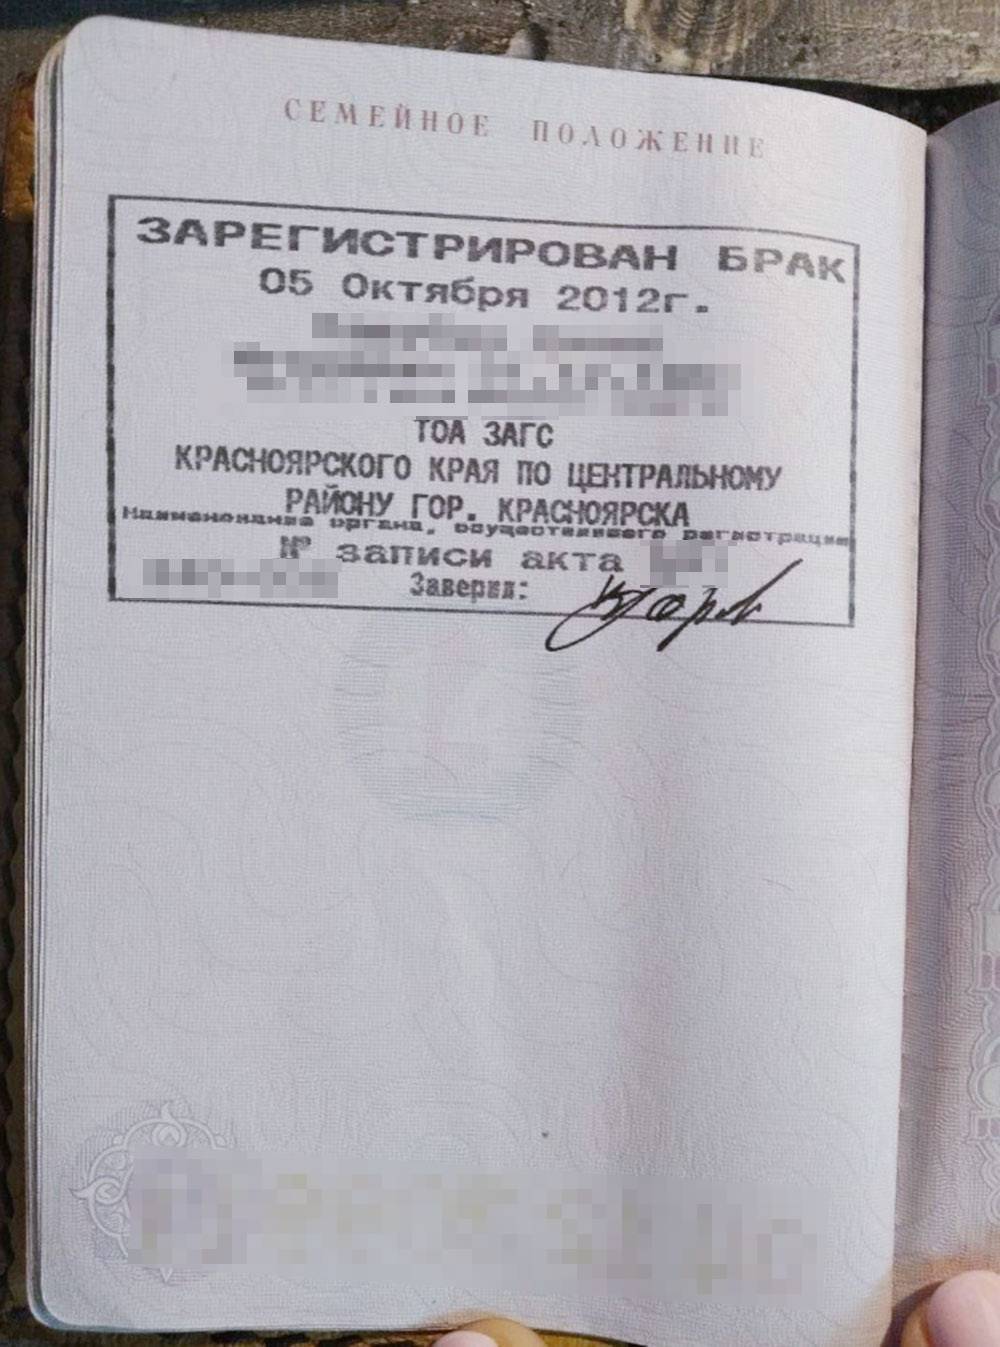 Вот так выглядит штамп, который ставится в паспорта молодоженов